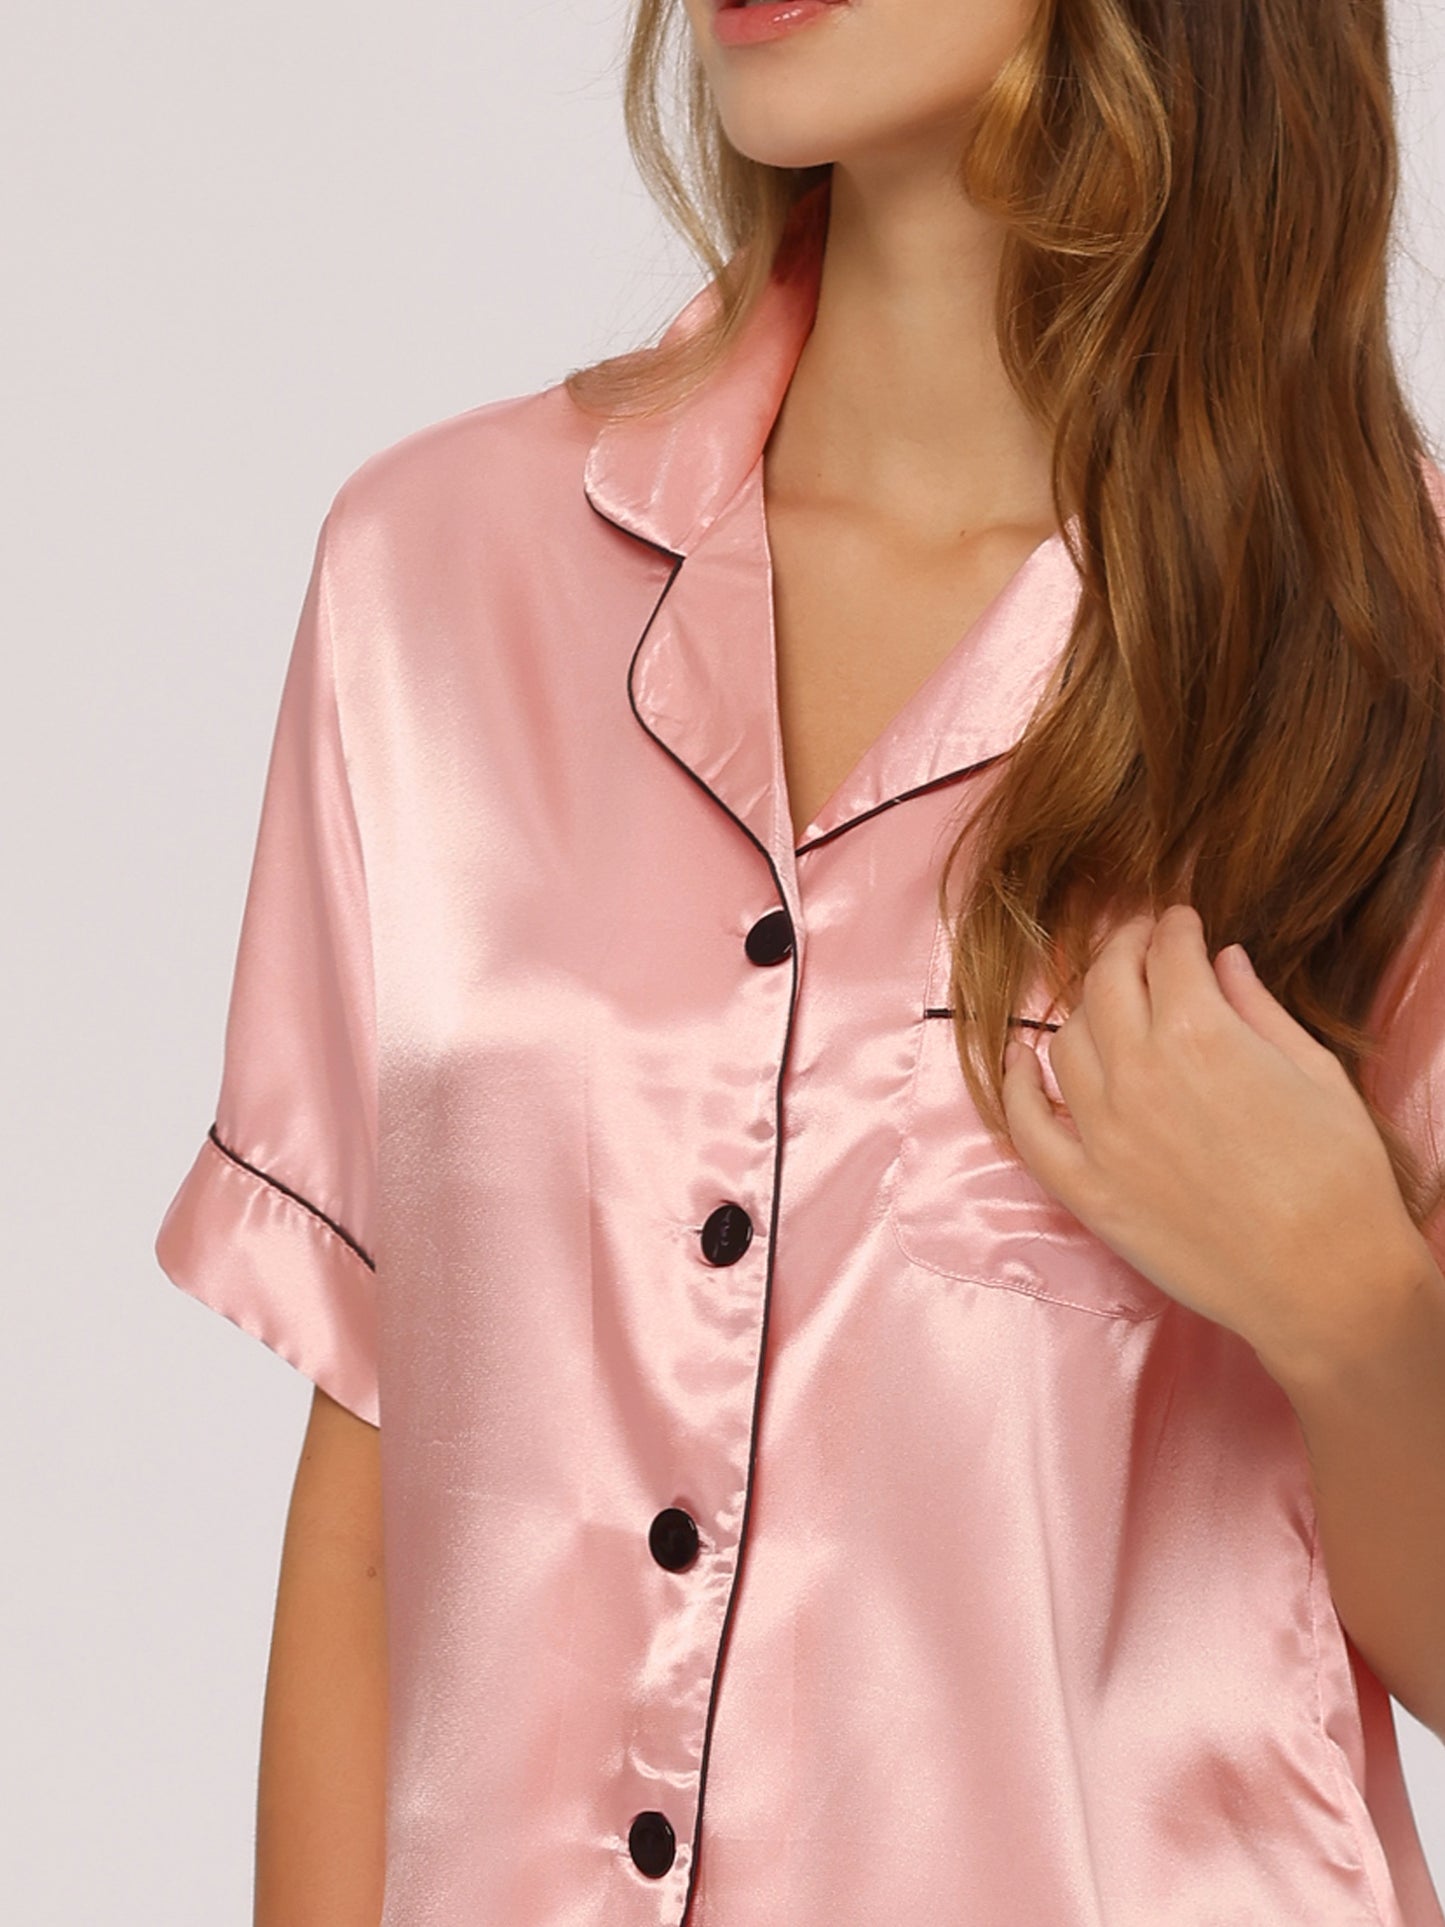 cheibear Satin 2pcs Lounge Sleepwear T-Shirt and Shorts Polka Dots Pajama Sets Pink